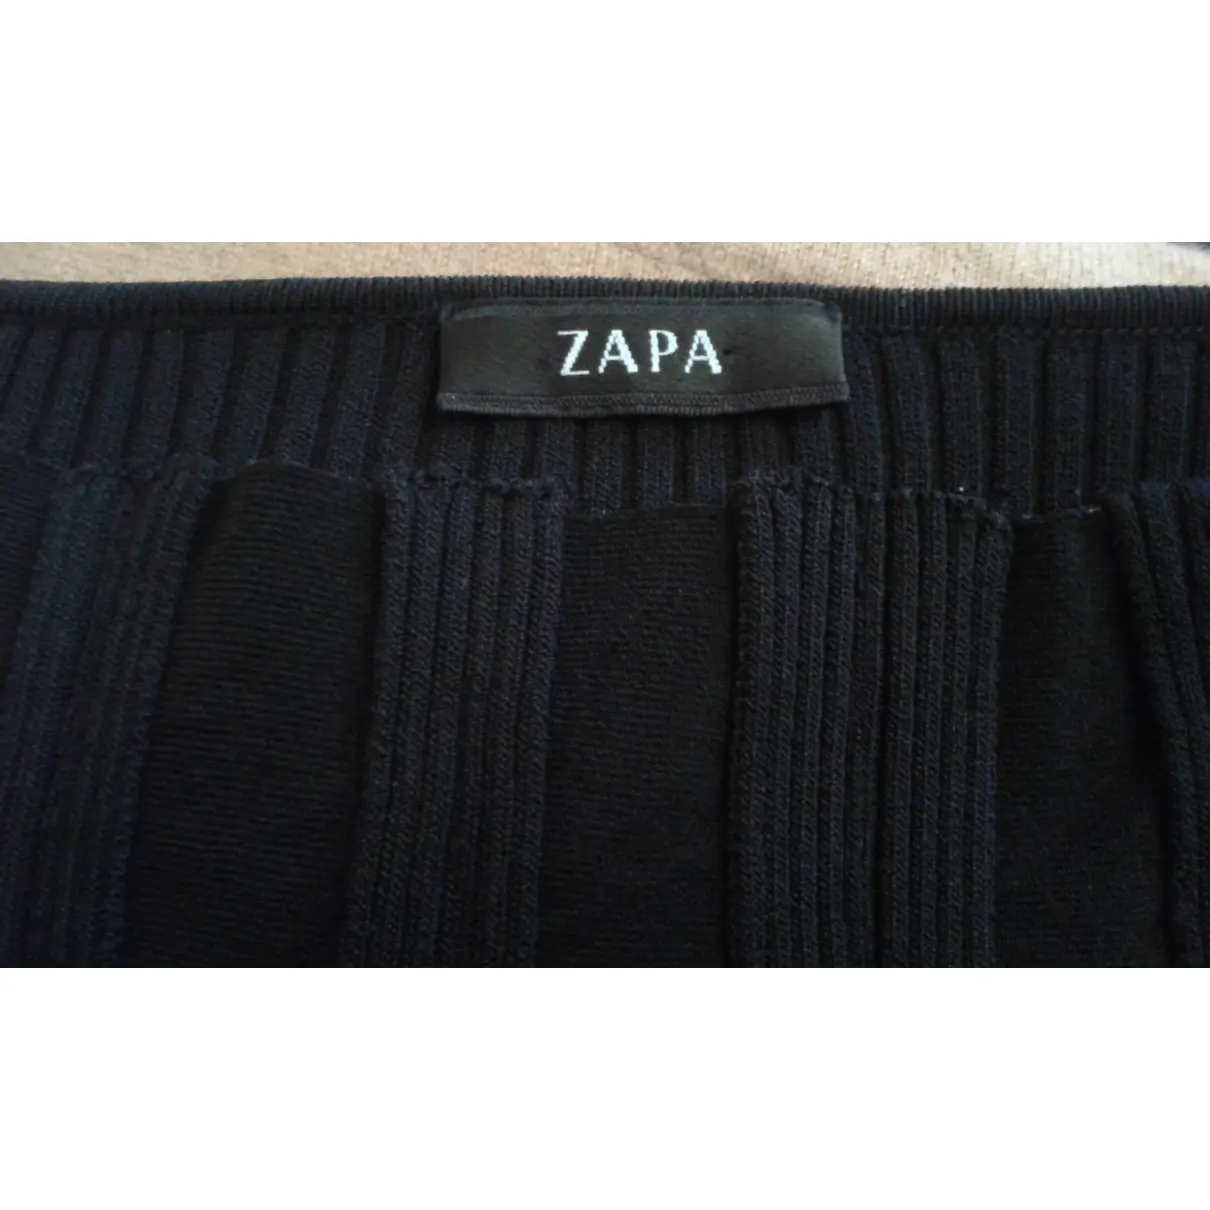 Luxury Zapa Knitwear Women